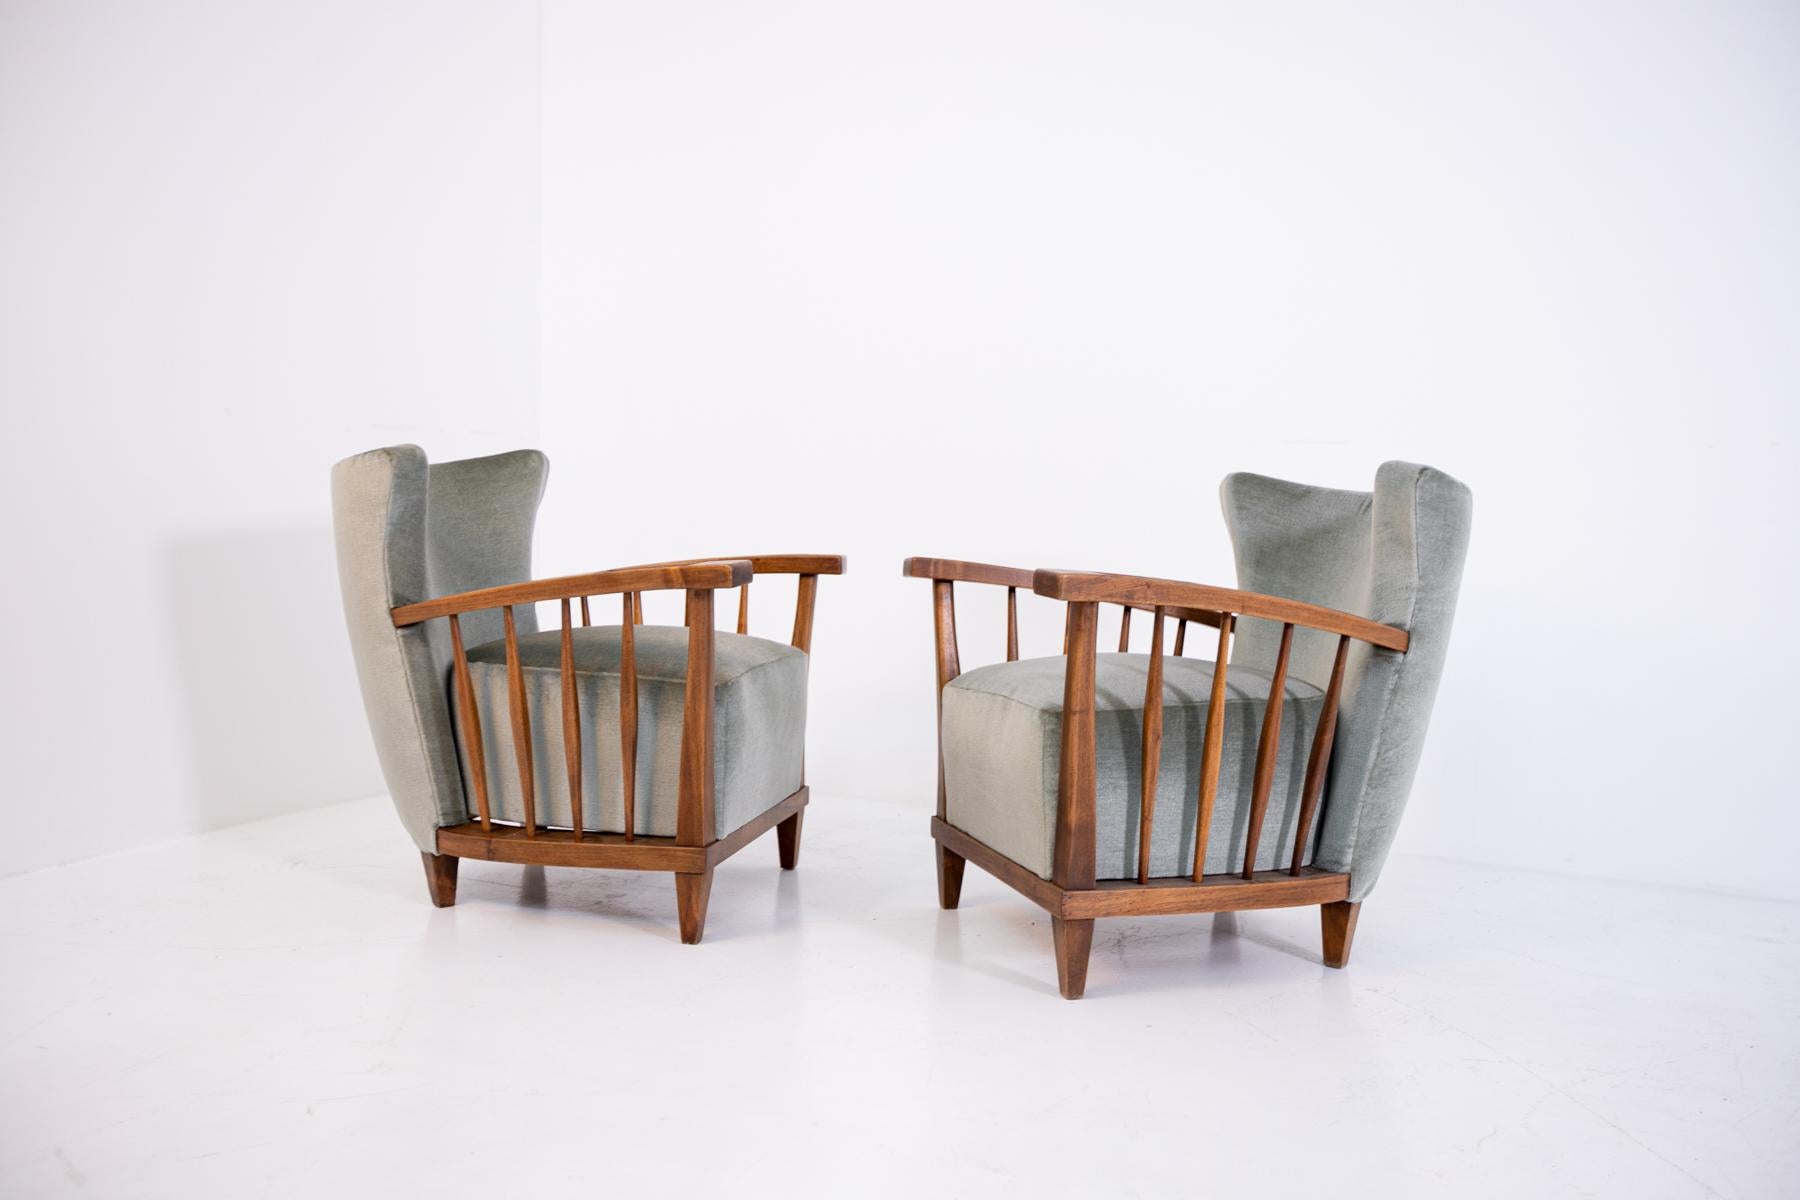 Superbe paire de fauteuils Maurizio Tempestini des années 1950.
La structure des fauteuils Maurizio Tempestini a été réalisée en bois de noyer robuste, tandis que le tissu utilisé pour les recouvrir est un velours gris.
La particularité des